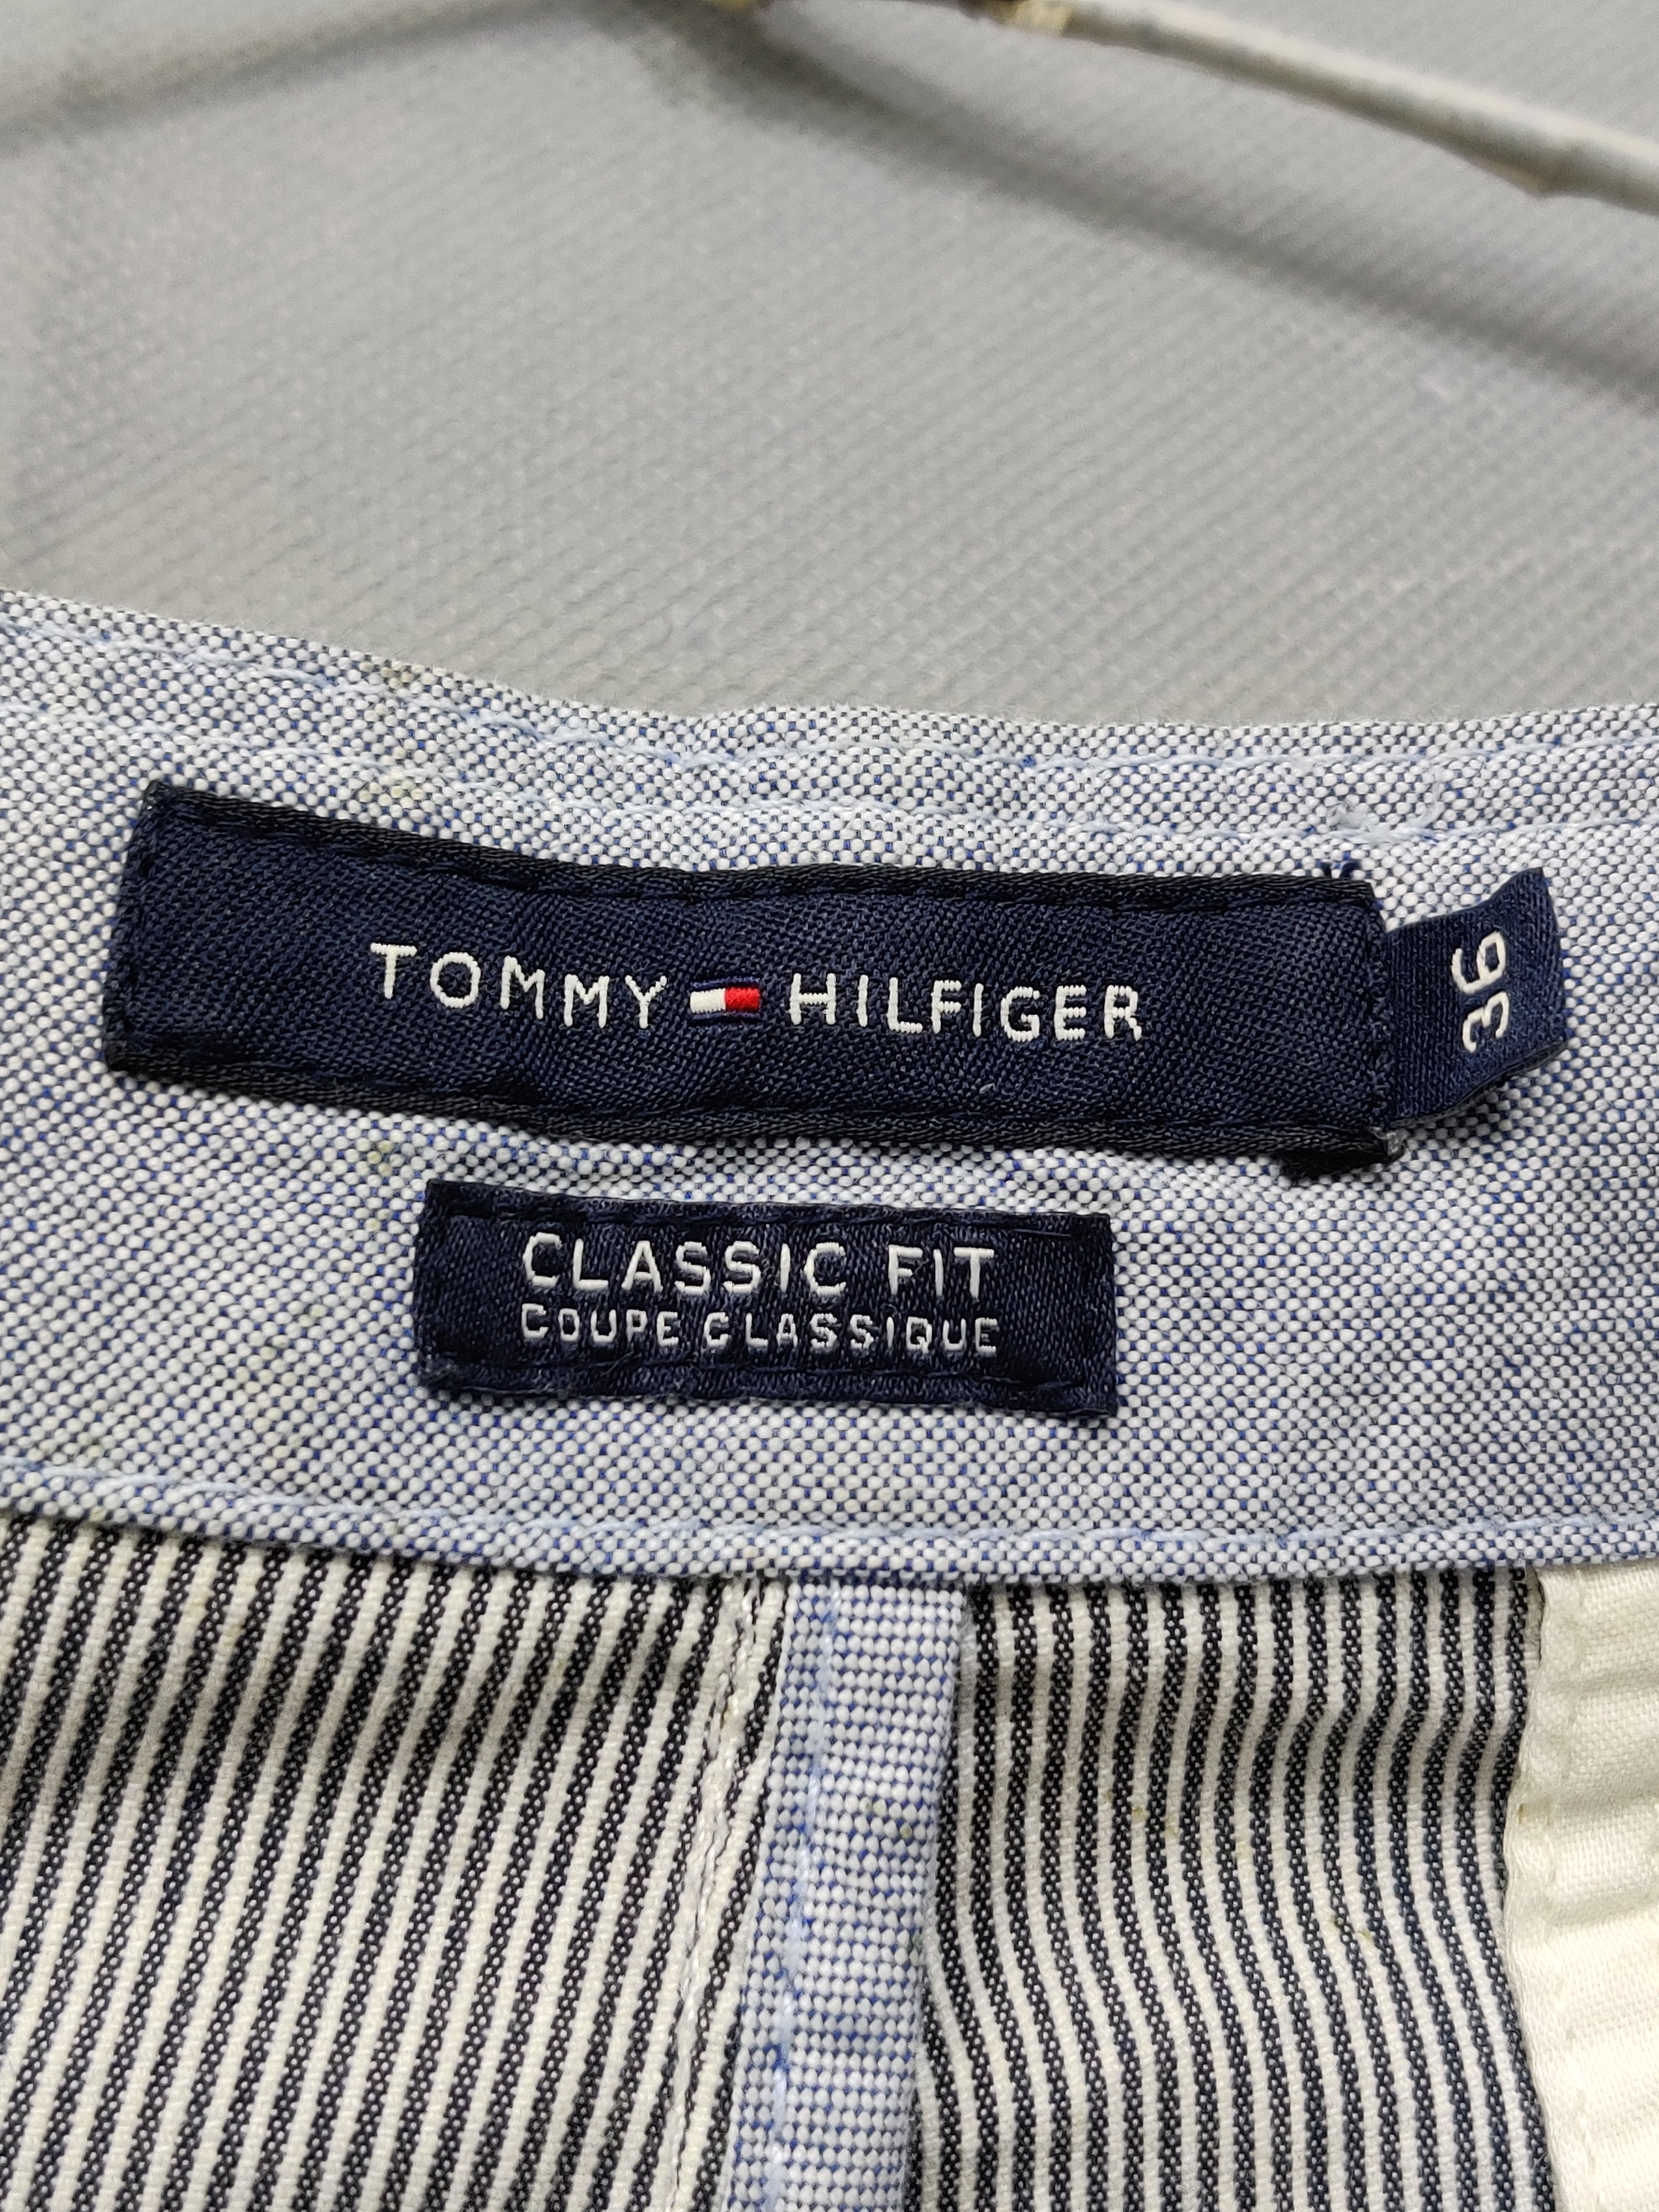 Tommy Hilfiger Branded Original Cotton Short For Men